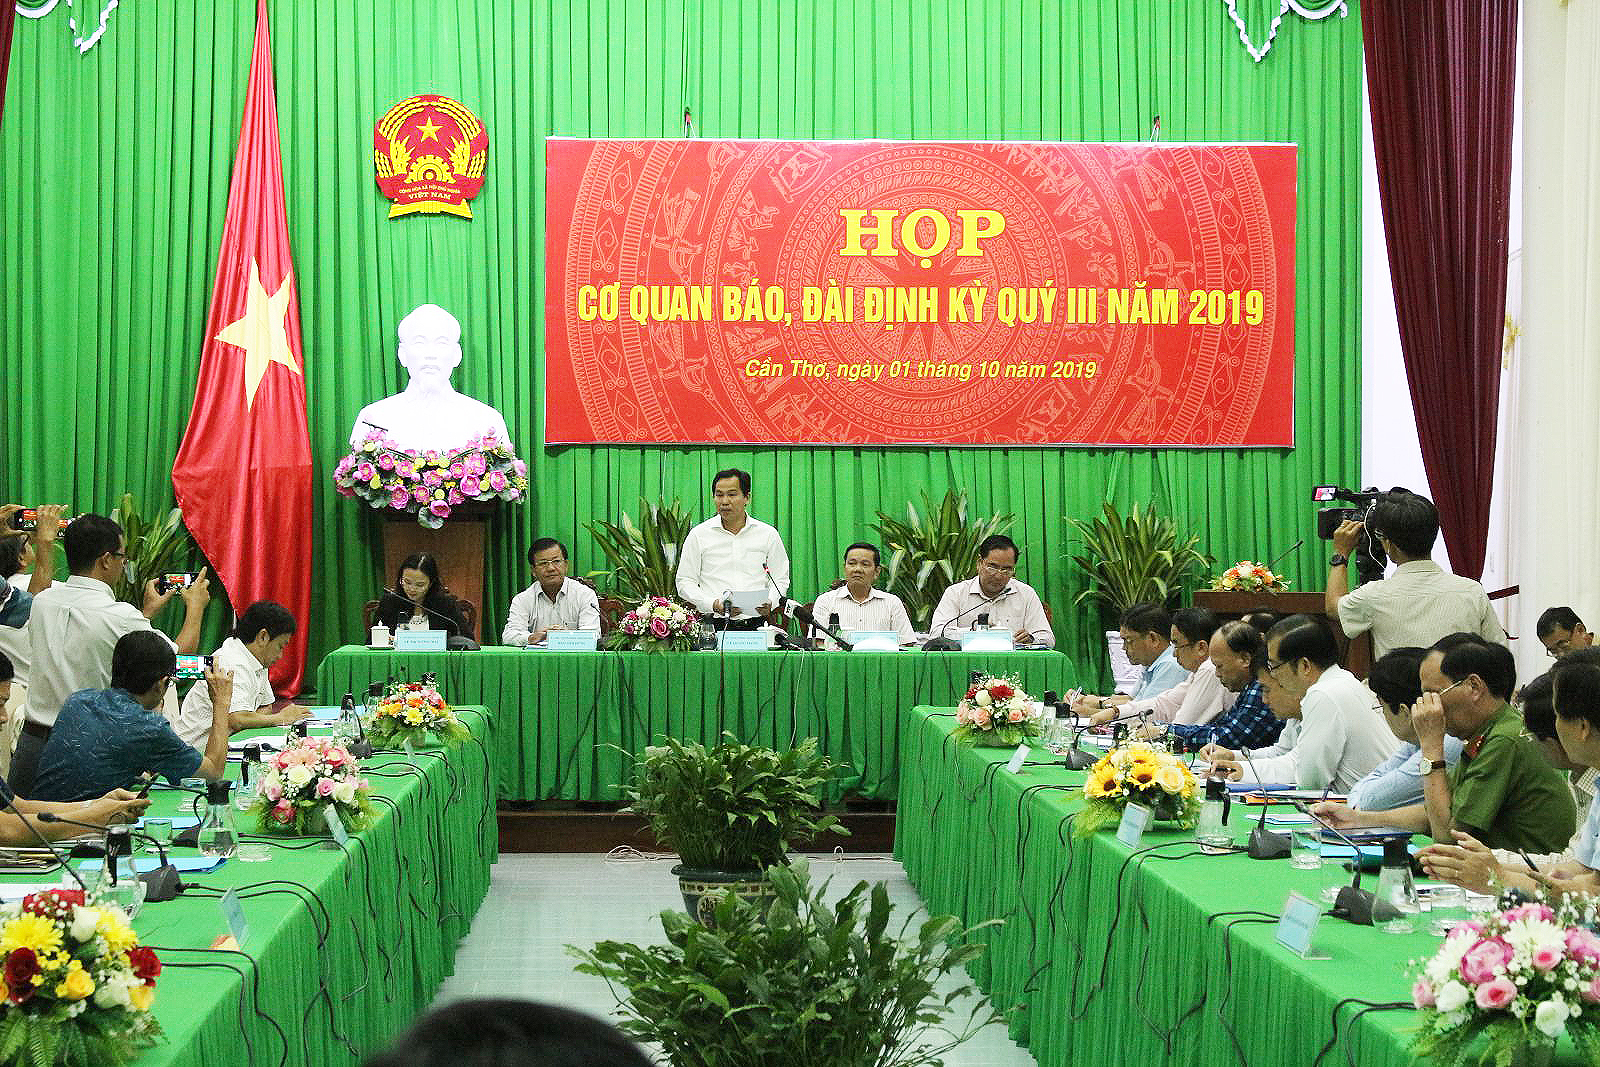 Đồng chí Lê Quang Mạnh, Phó Bí thư Thành ủy, Chủ tịch UBND TP Cần Thơ giải đáp thắc mắc của các nhà báo.